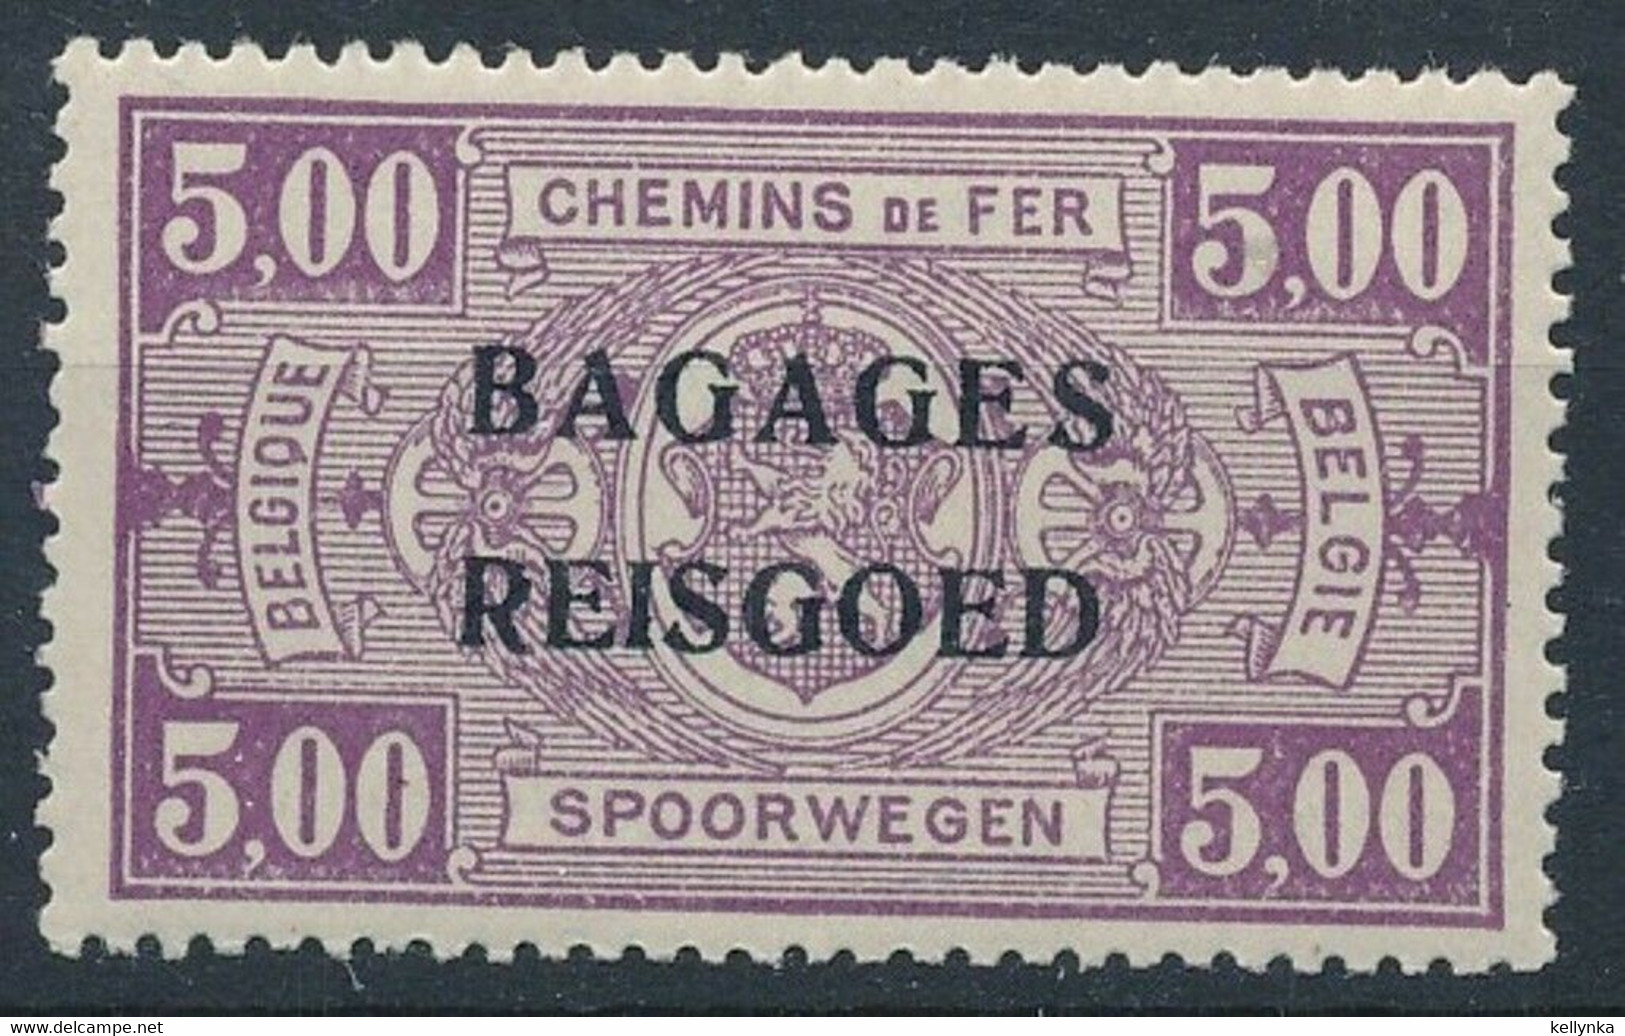 Belgique - Belgie - BA14 - Bagages - Reisgoed - 1935 - MNH - Luggage [BA]